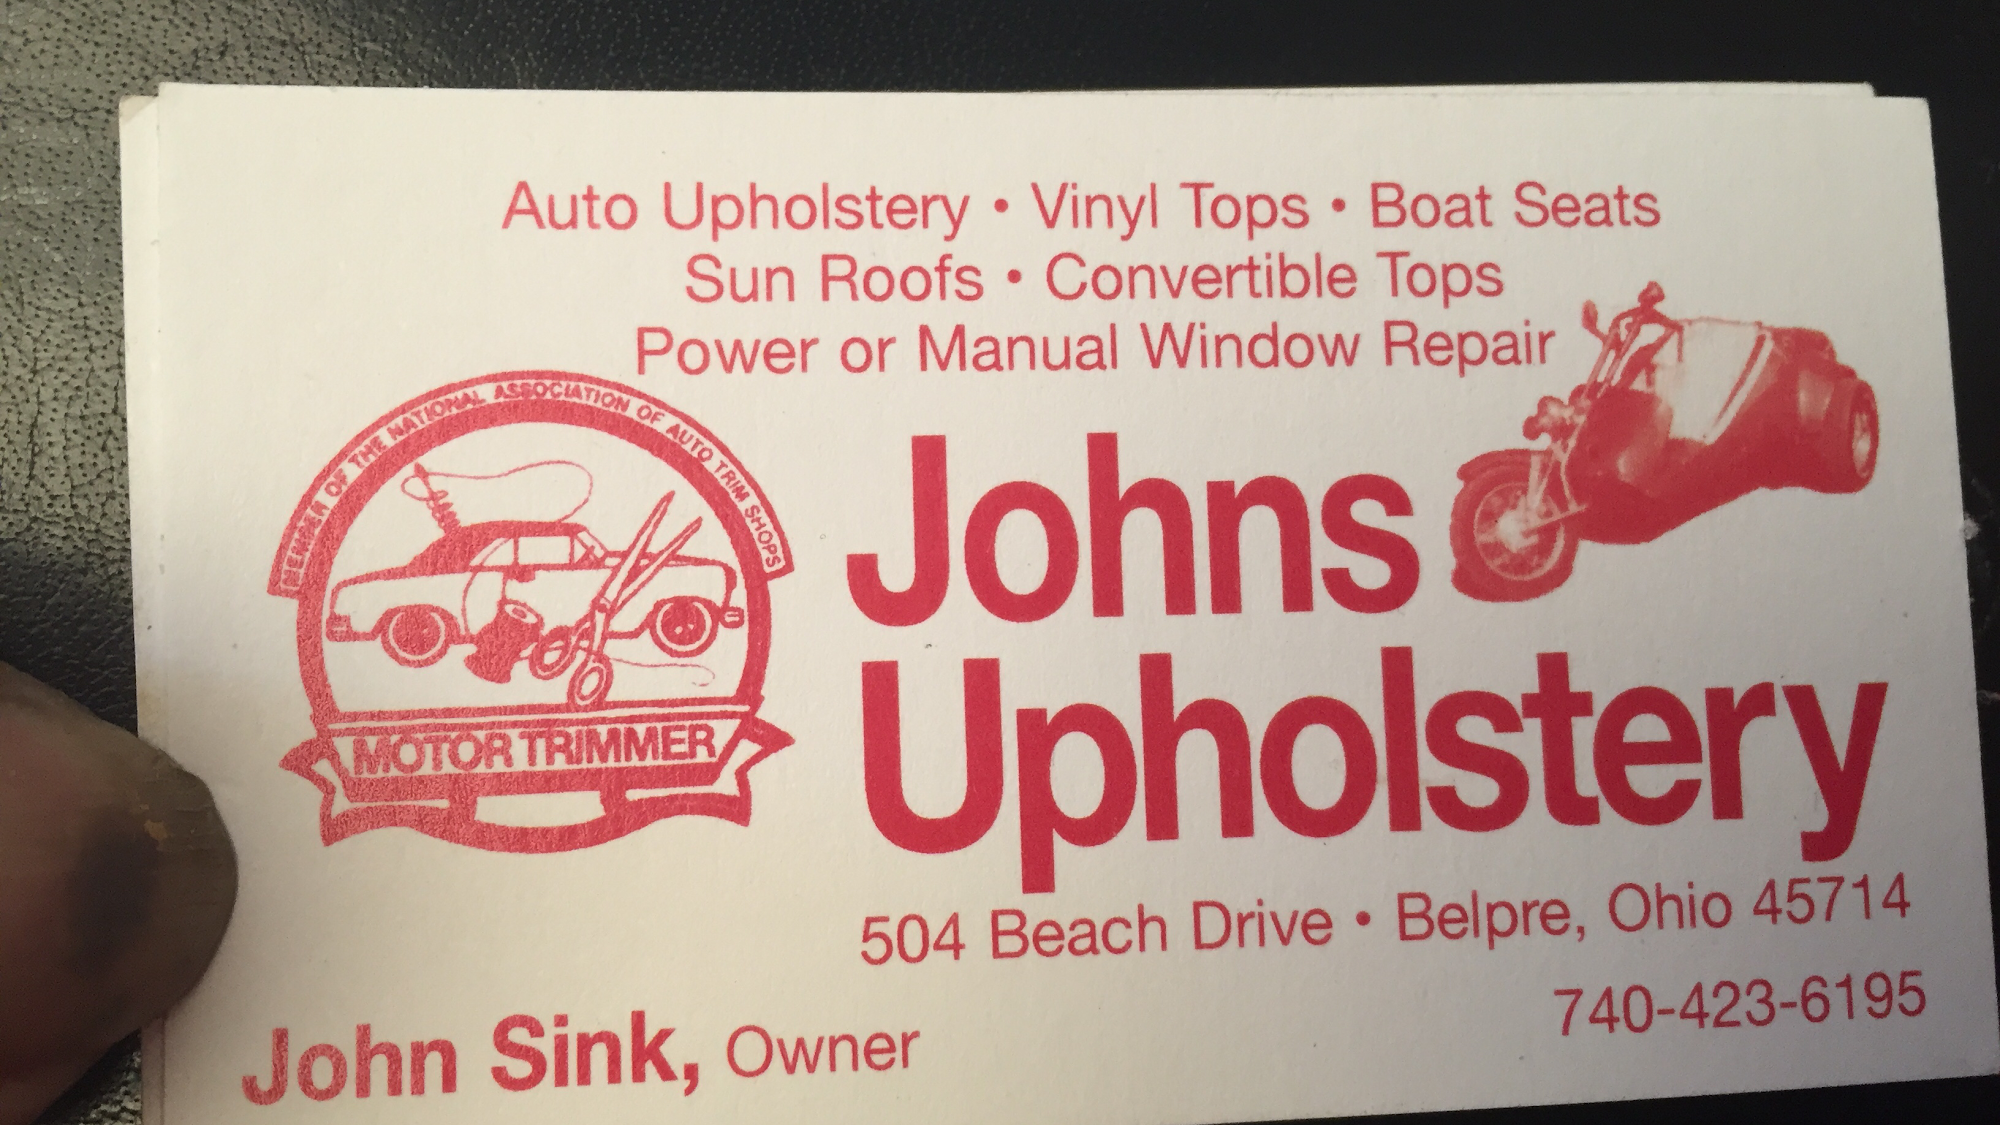 John's Auto Upholstery